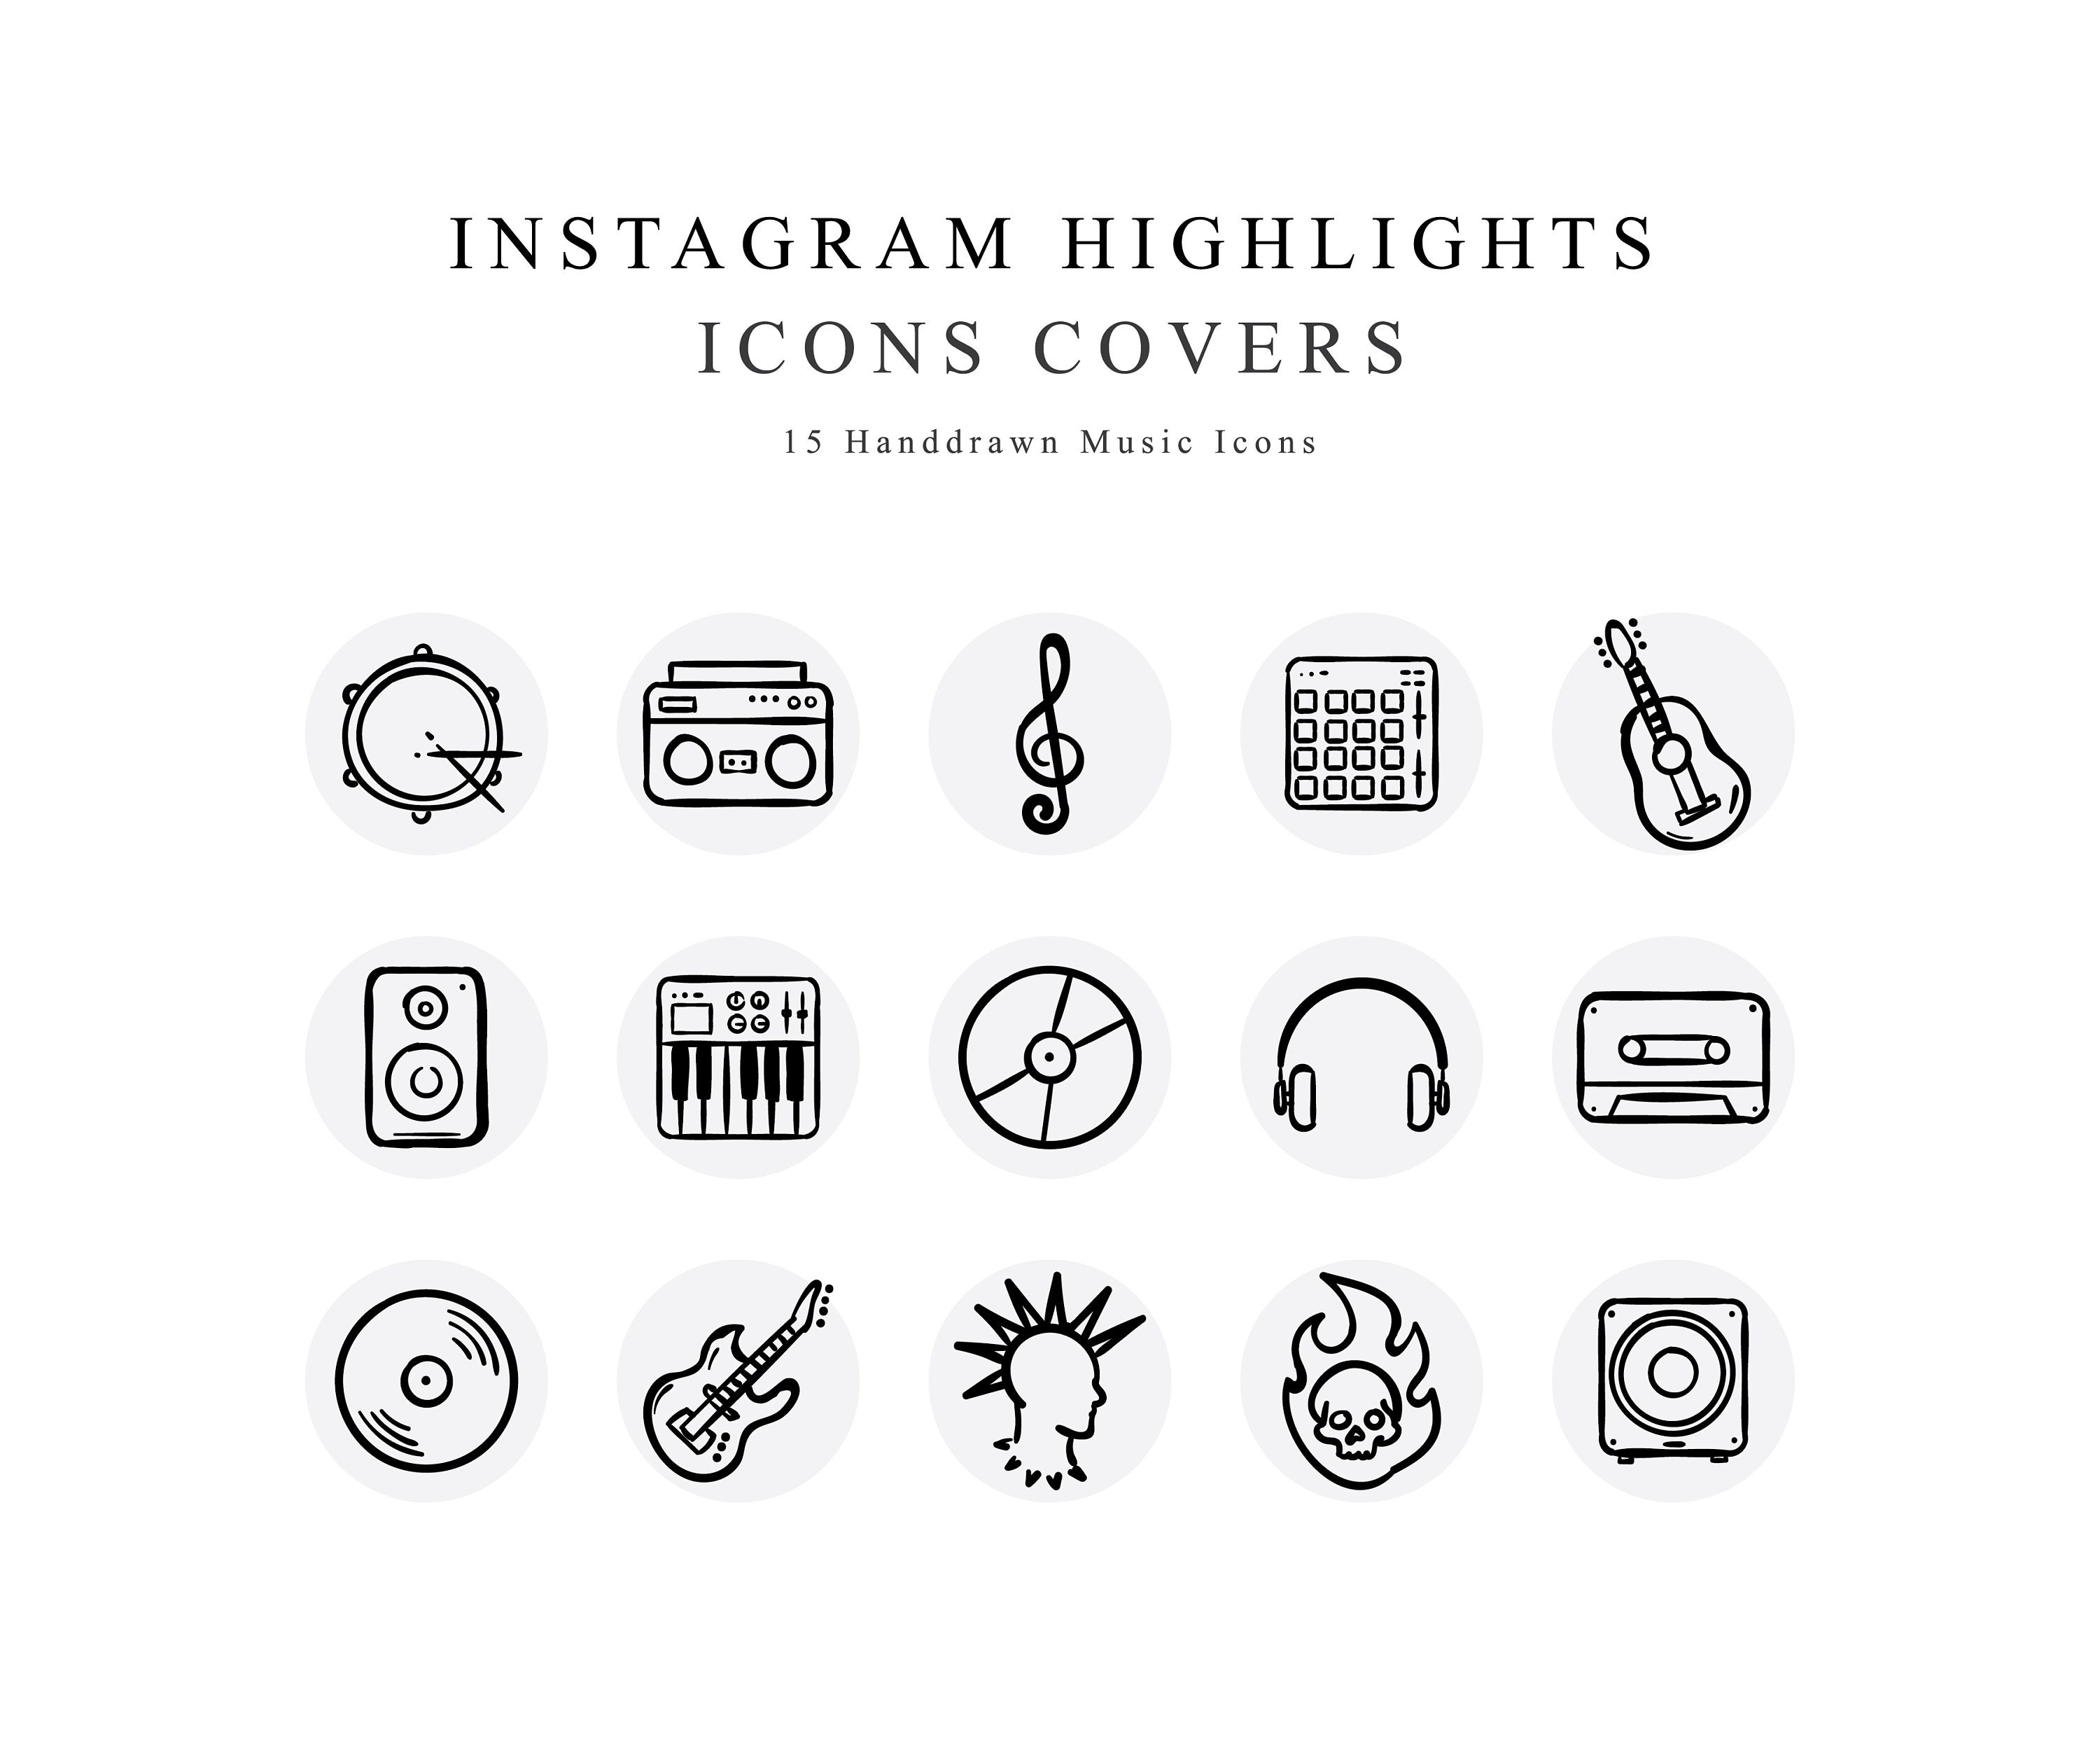 Share more than 84 music logo for instagram highlights latest - ceg.edu.vn